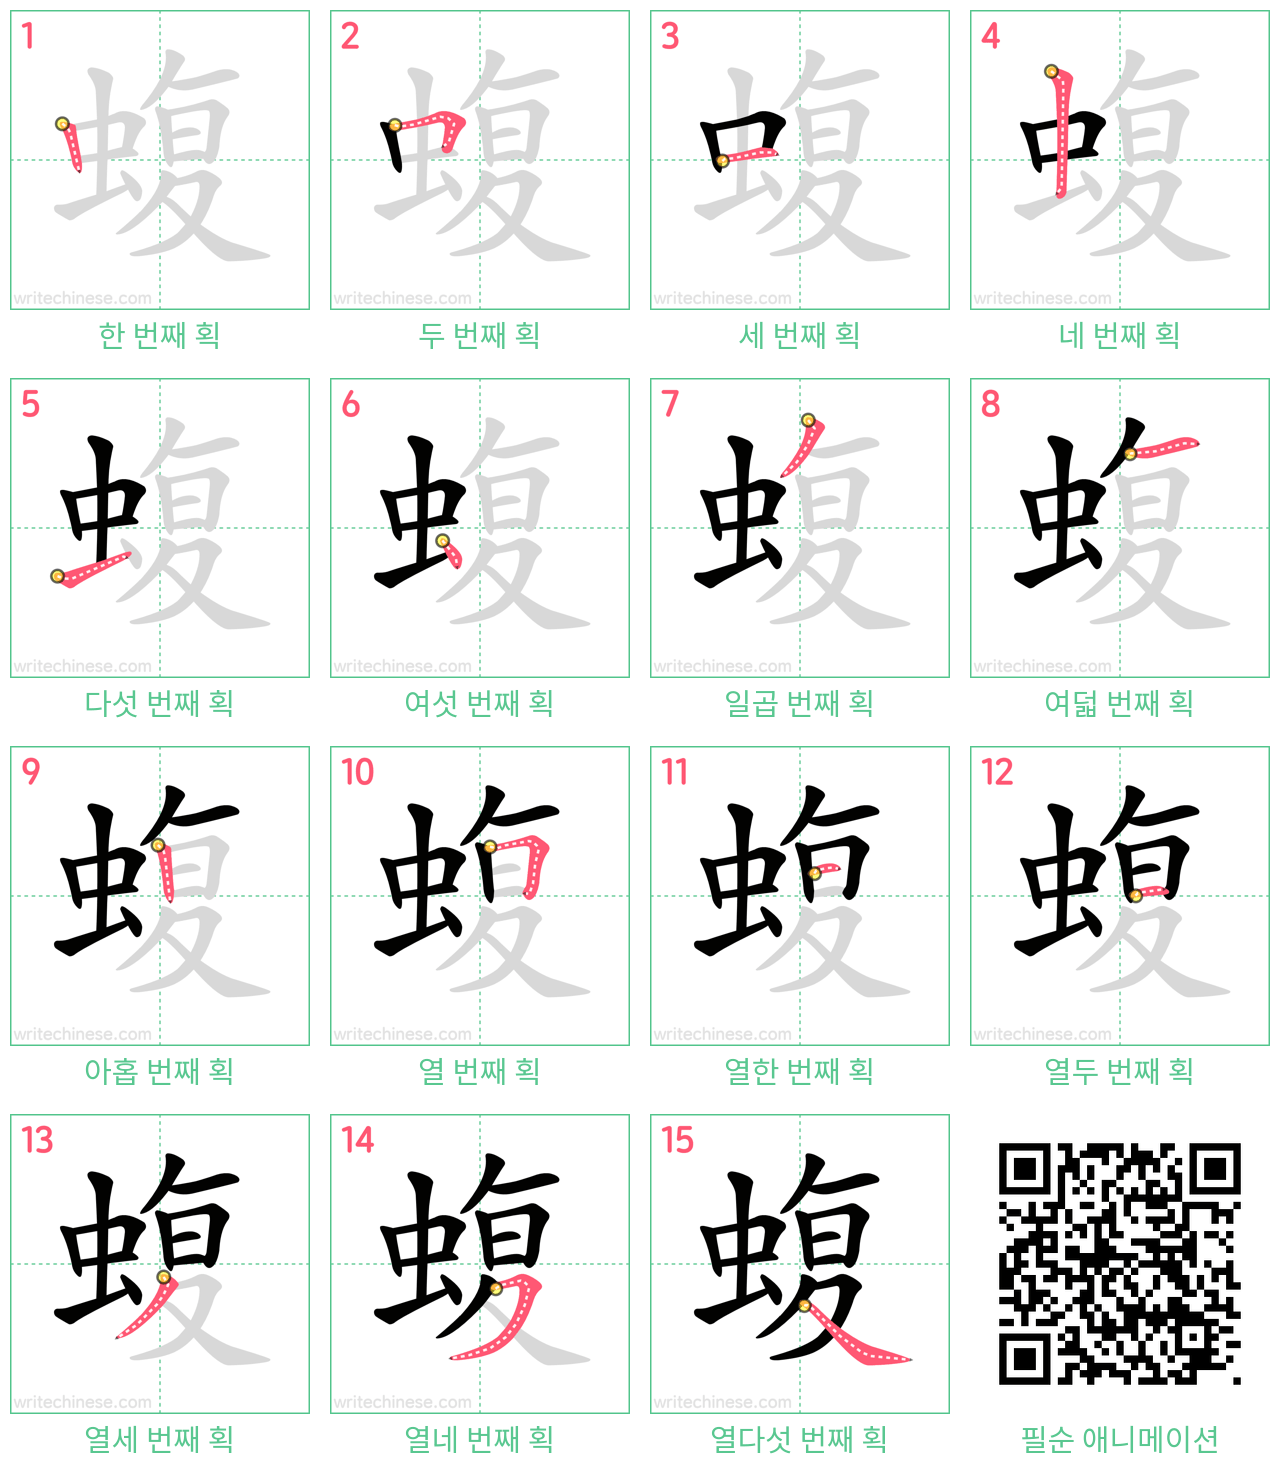 蝮 step-by-step stroke order diagrams